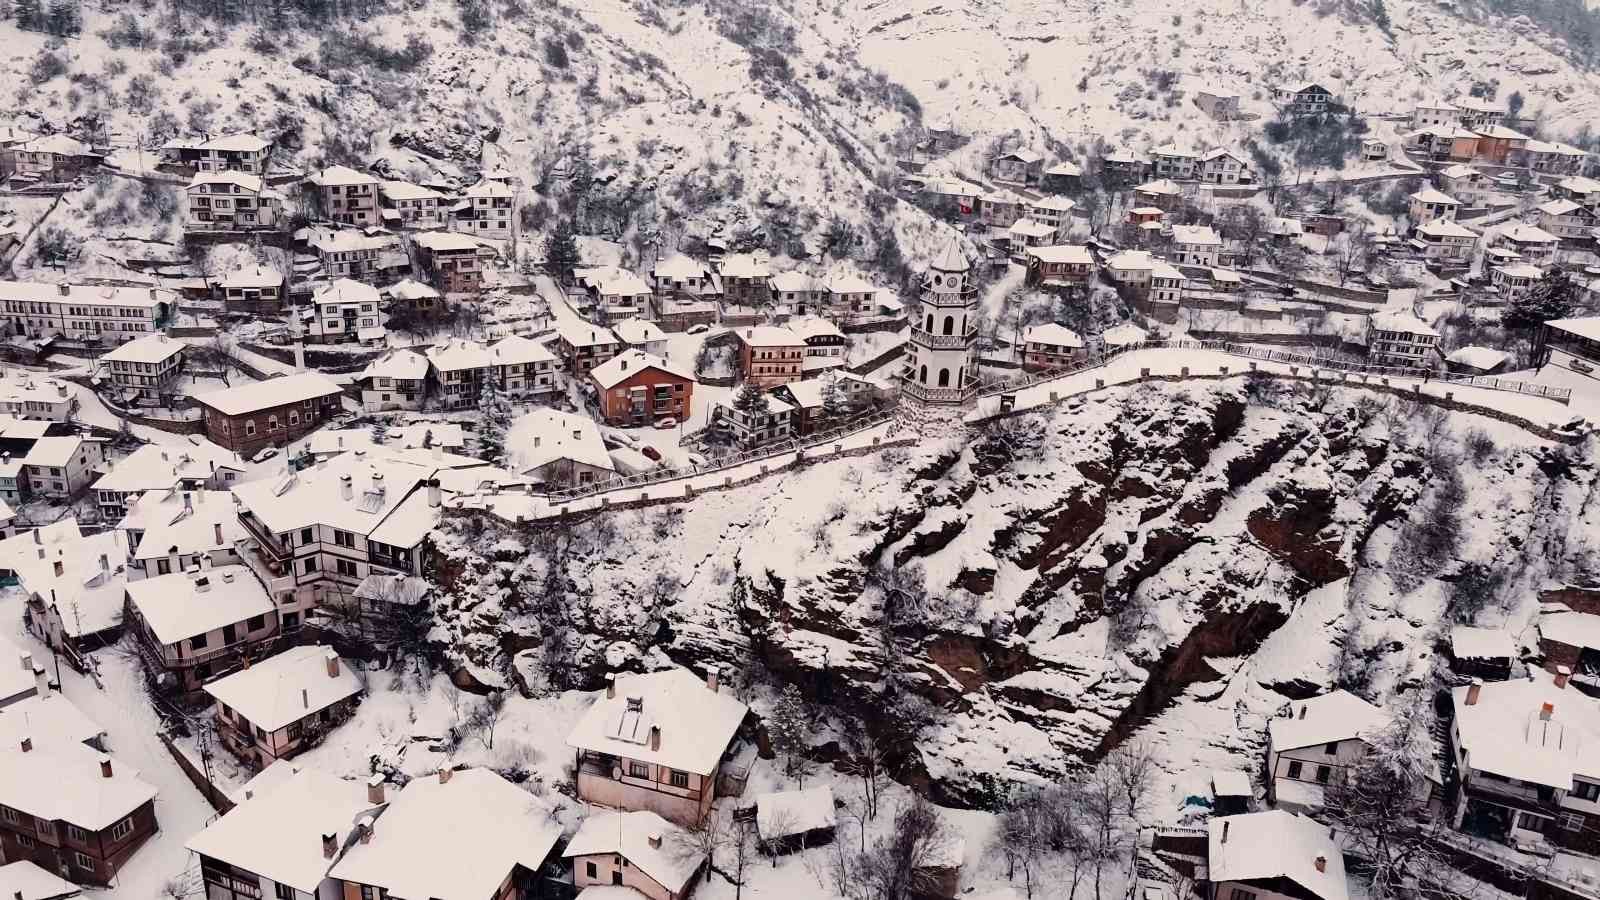 Tarihi Osmanlı kasabası Göynük, beyaz örtüyle kaplandı #bolu